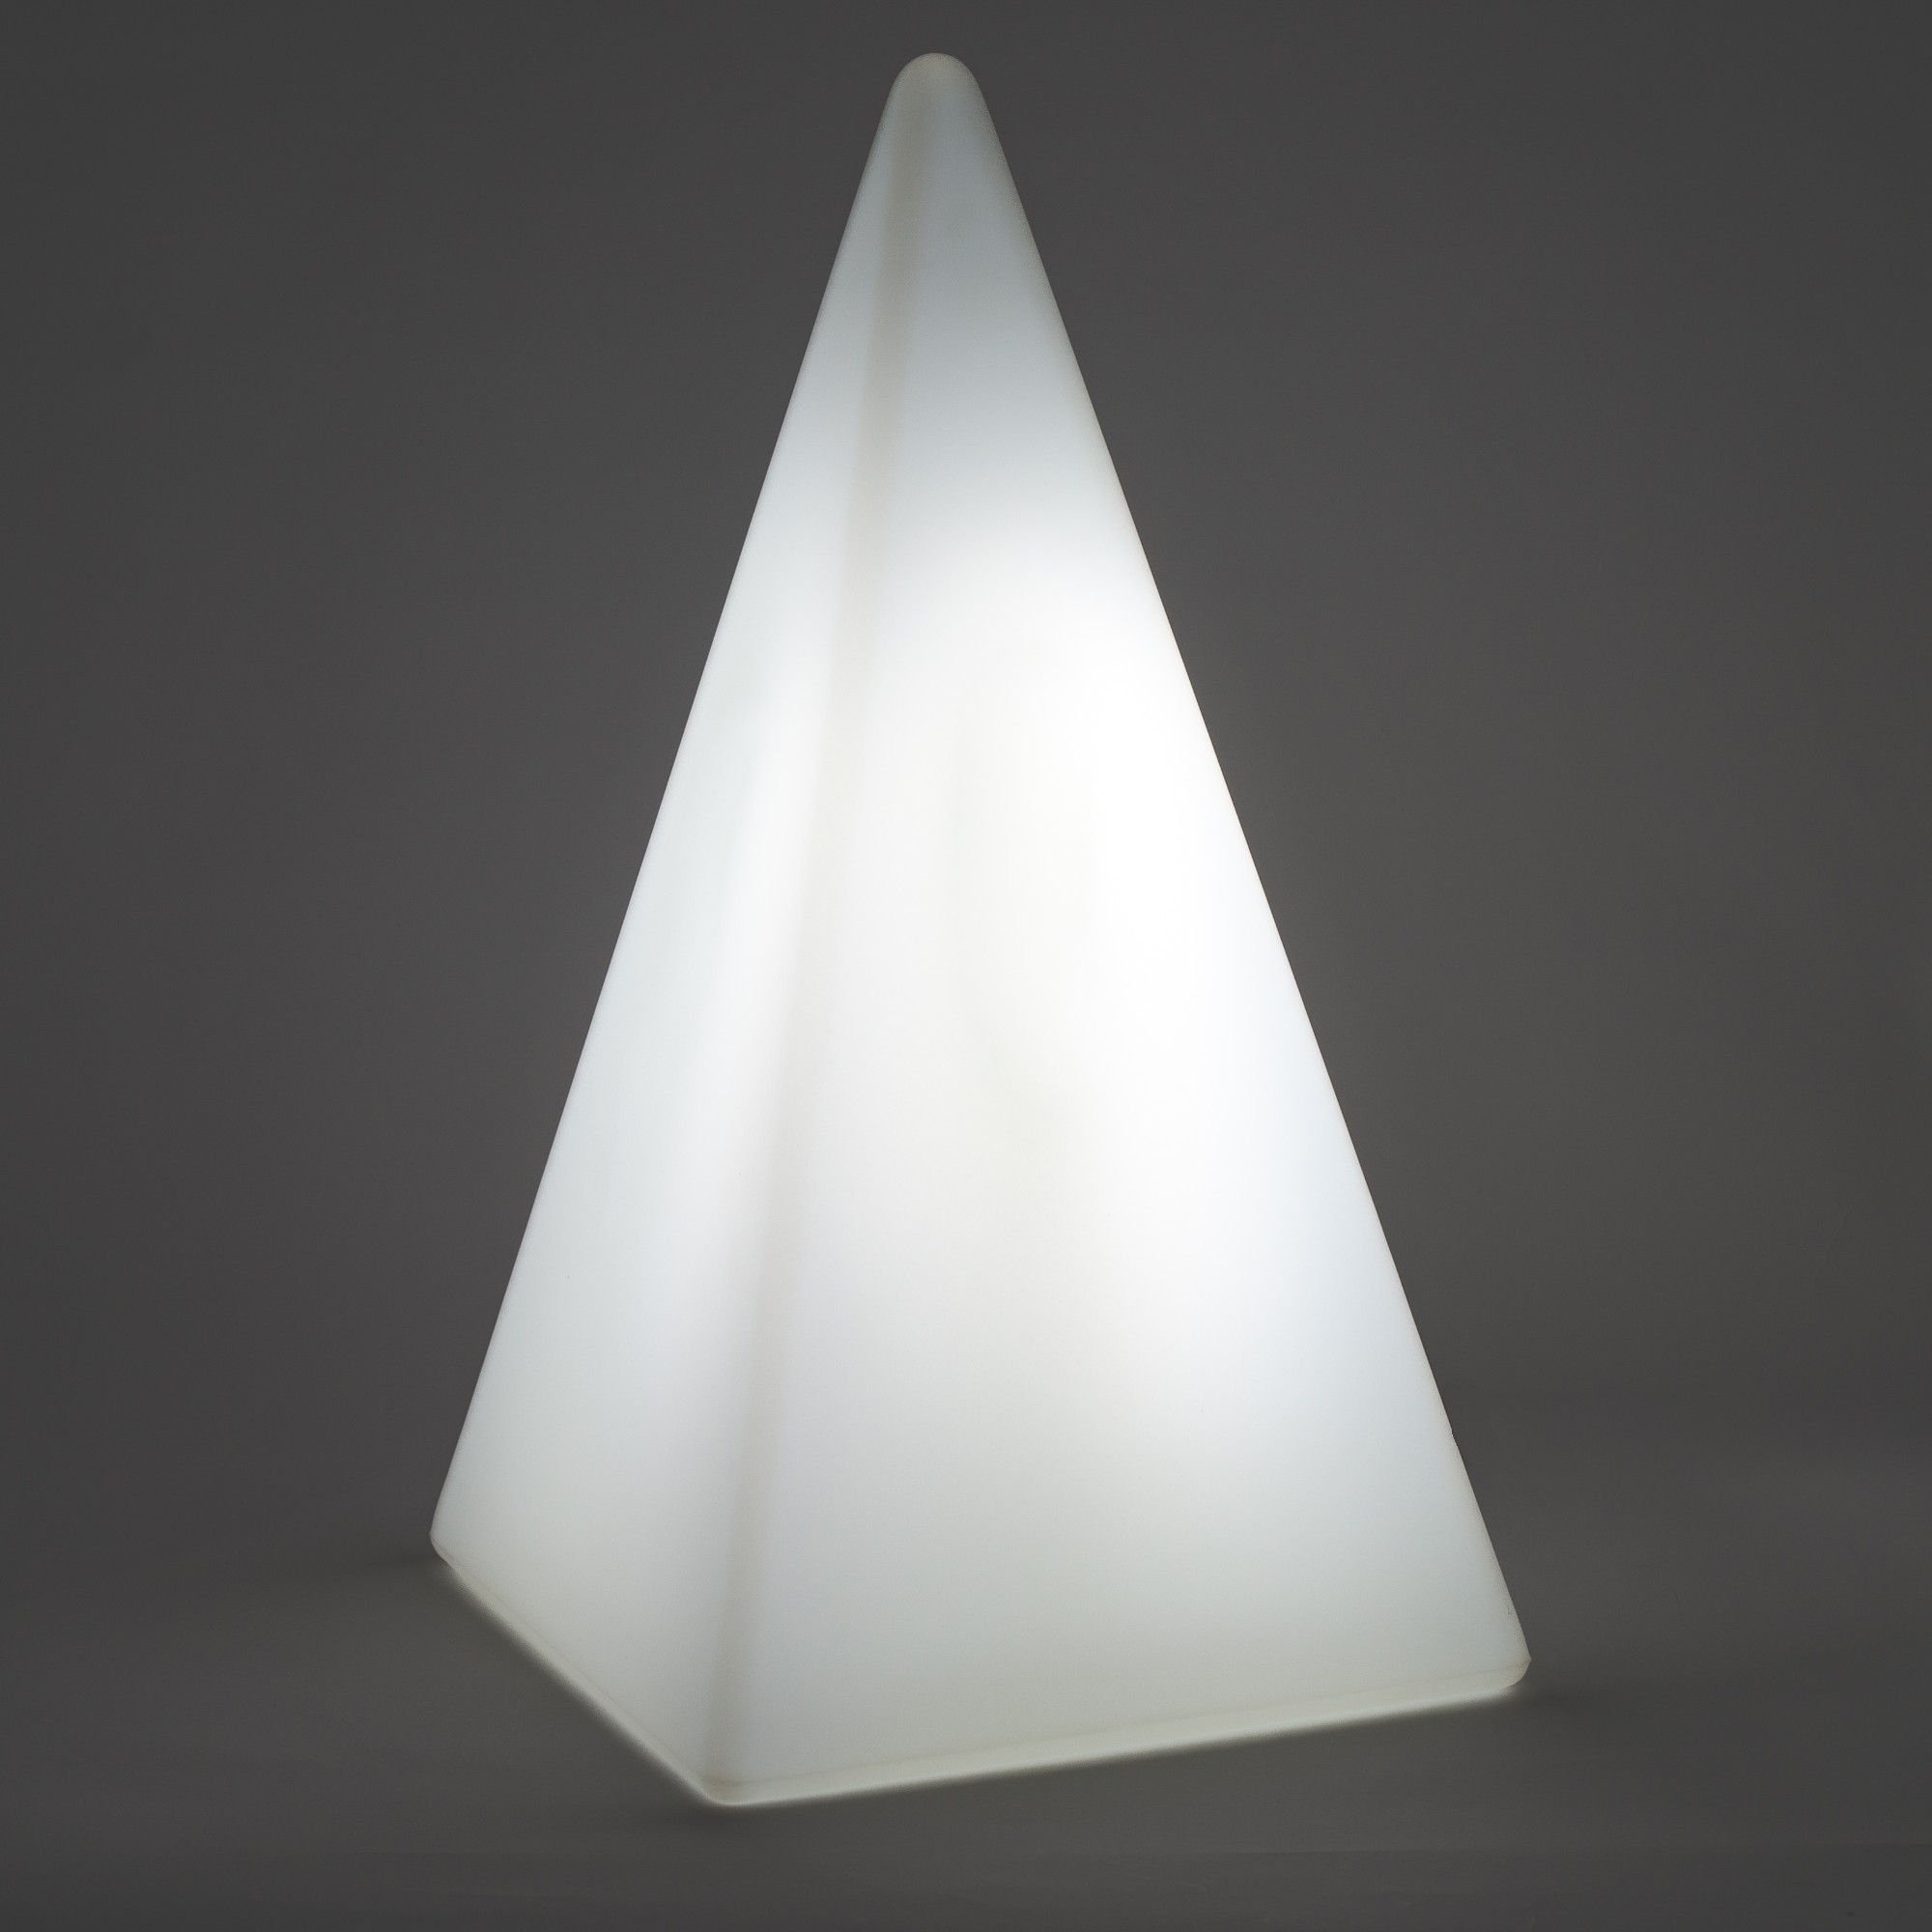 70300 Standleuchte Pyramide 73 cm der Firma EPSTEIN Design Leuchten